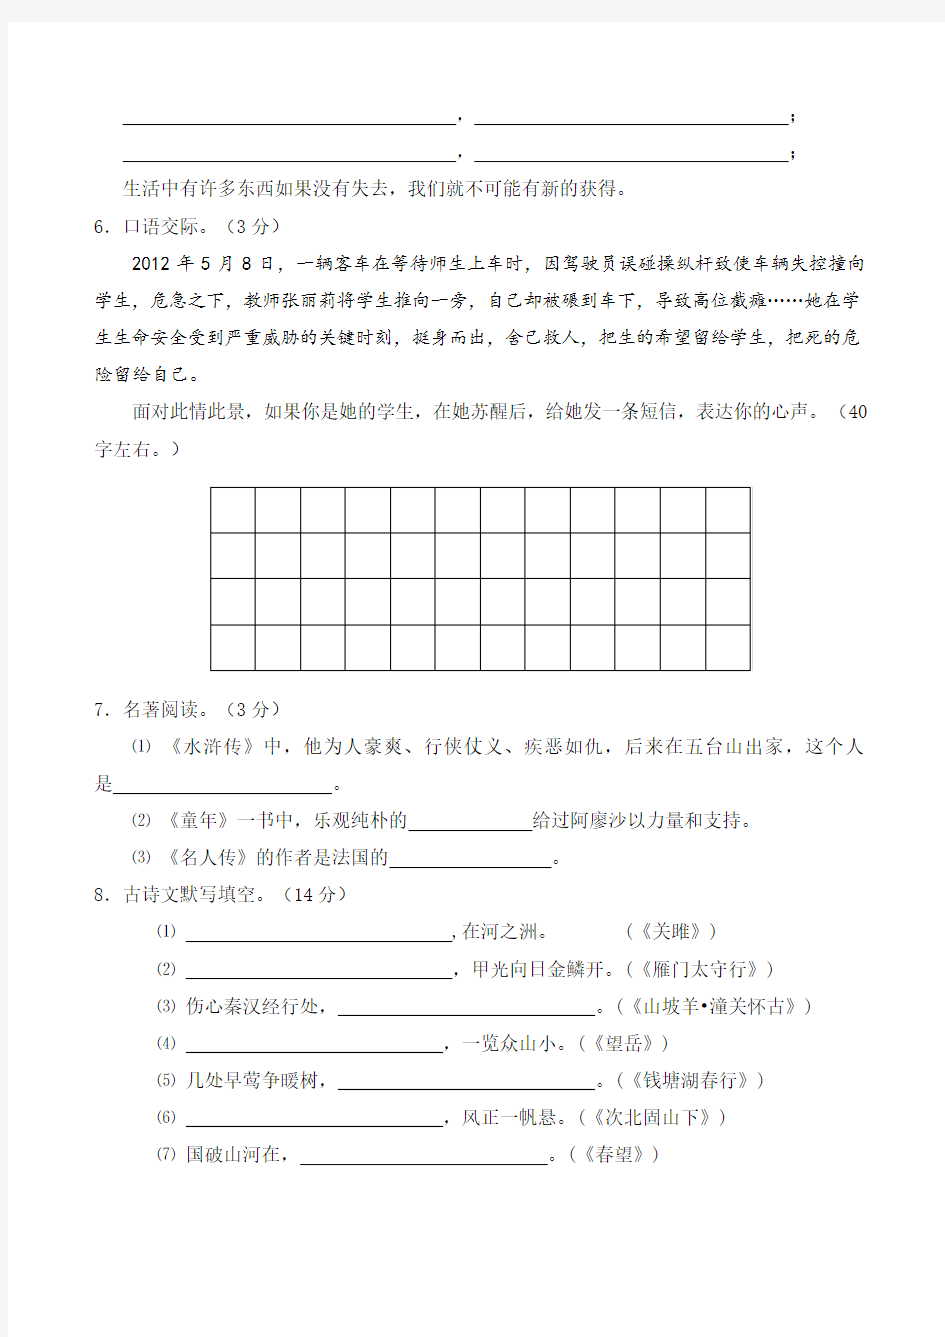 (完整版)初中语文中考试卷及答案